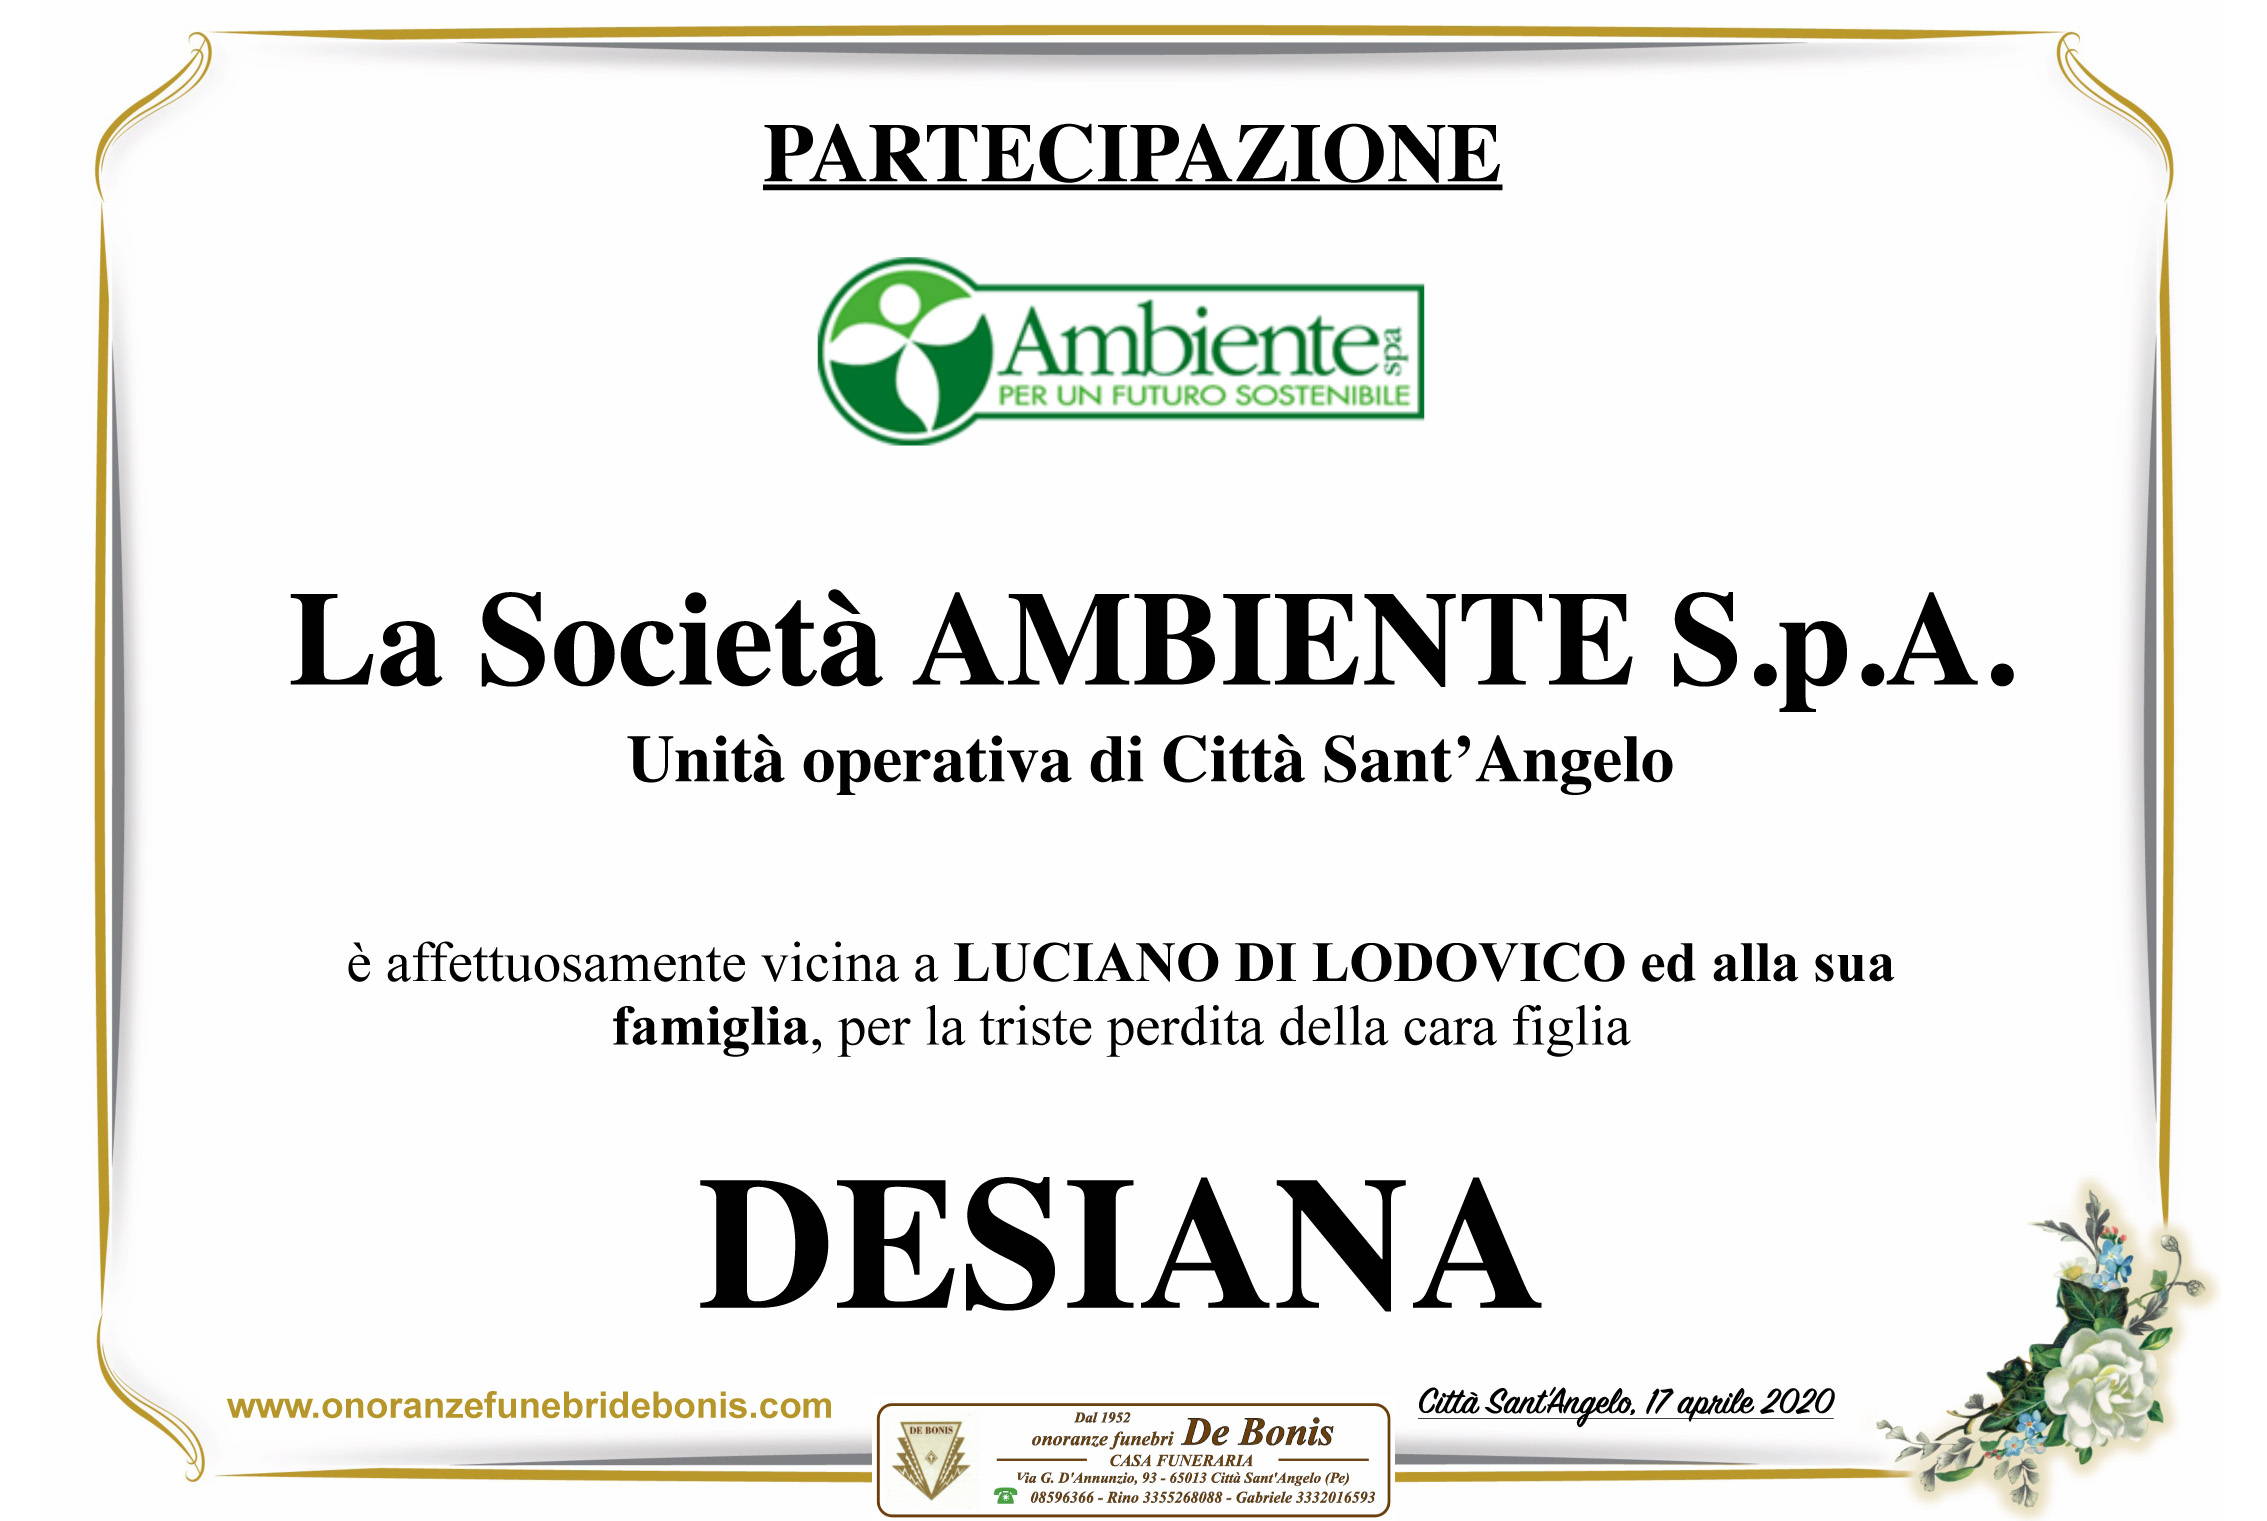 La Società "Ambiente S.p.A." - Città Sant'Angelo